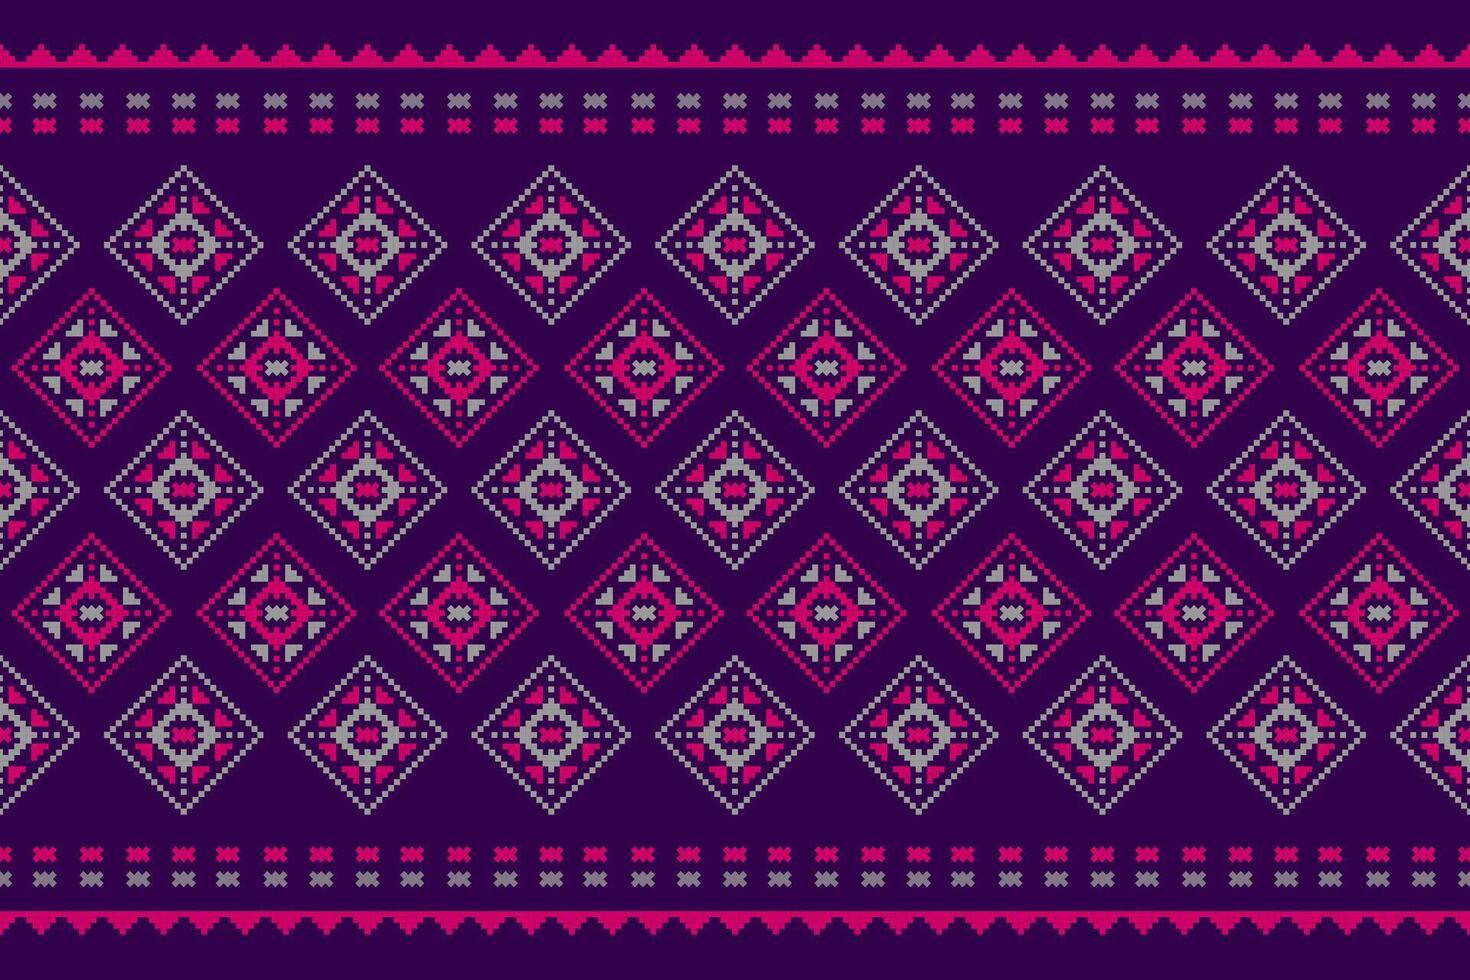 abstrakt ethnisch aztekisch Stil. ethnisch geometrisch nahtlos Muster im Stamm. amerikanisch, Mexikaner Stil. Design zum Hintergrund, Illustration, Stoff, Kleidung, Teppich, Textil, Batik, Stickerei. vektor